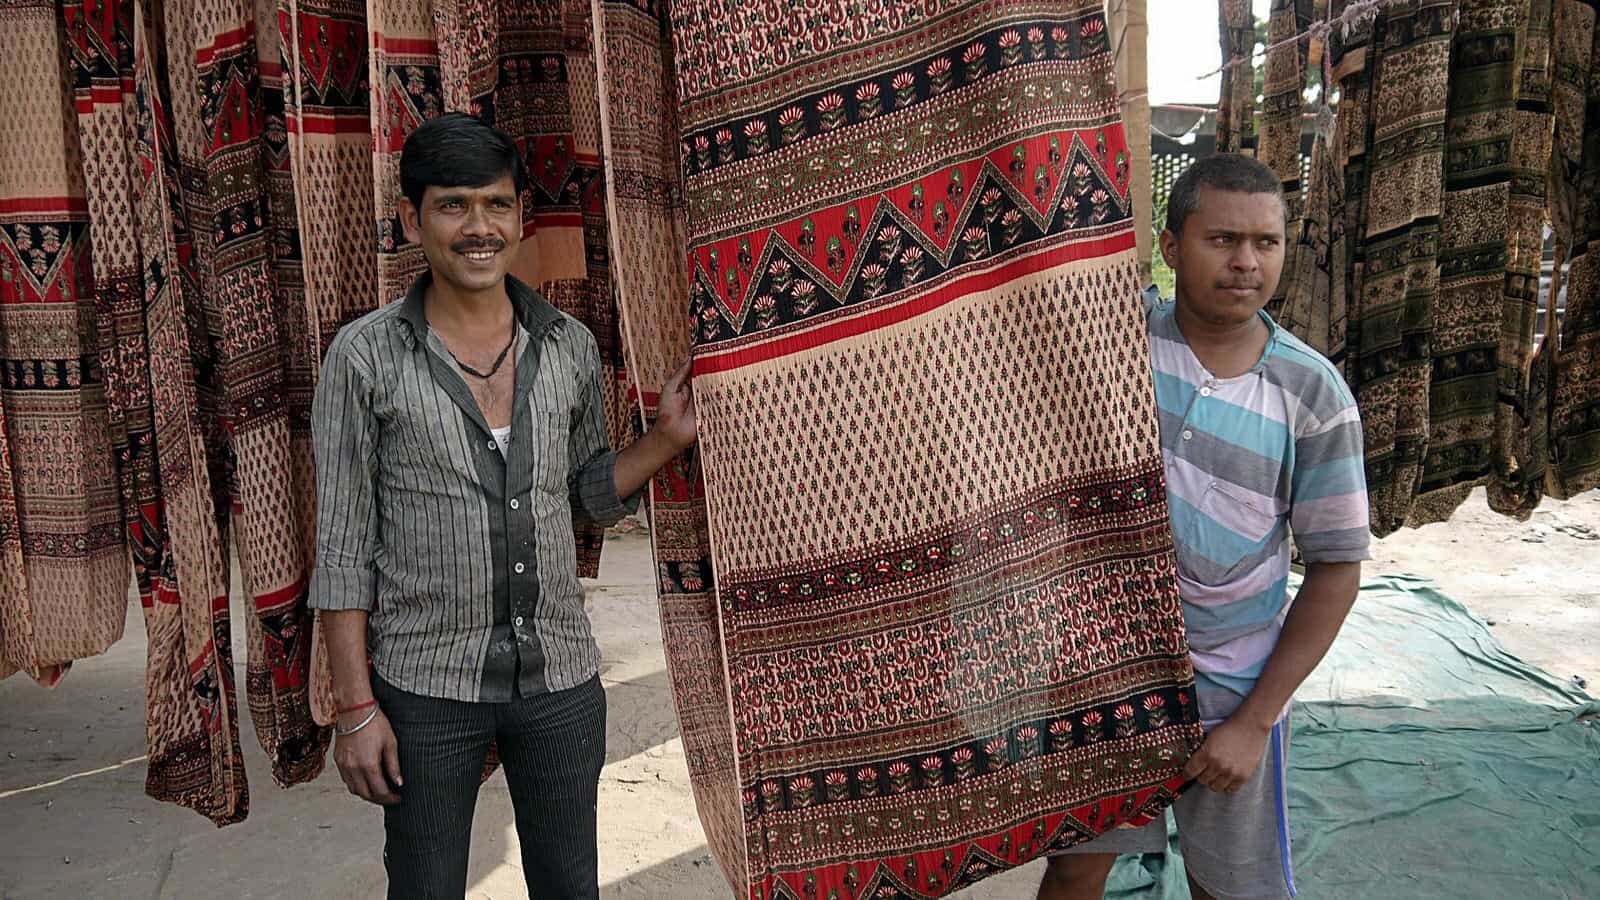 齋浦爾近郊小鎮桑格內爾：私闖染布工廠，木刻印章大叔的攝影練習